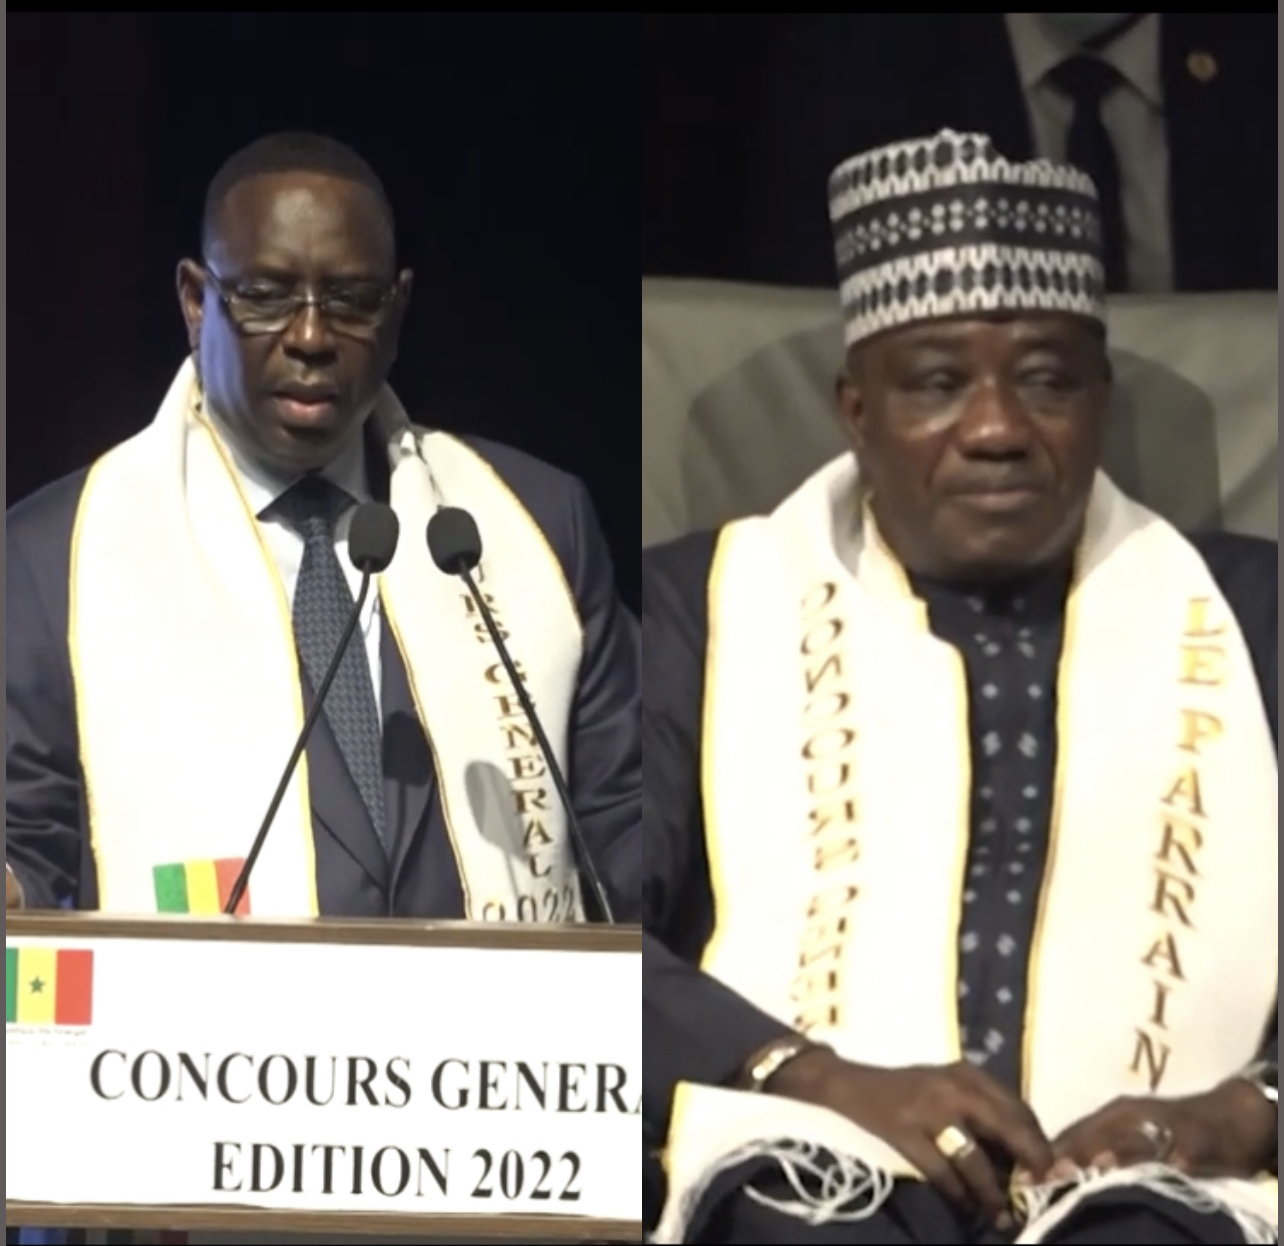 Concours général édition 2022 : Le président de la République décerne son satisfecit au parrain, le professeur Souleymane Mboup.